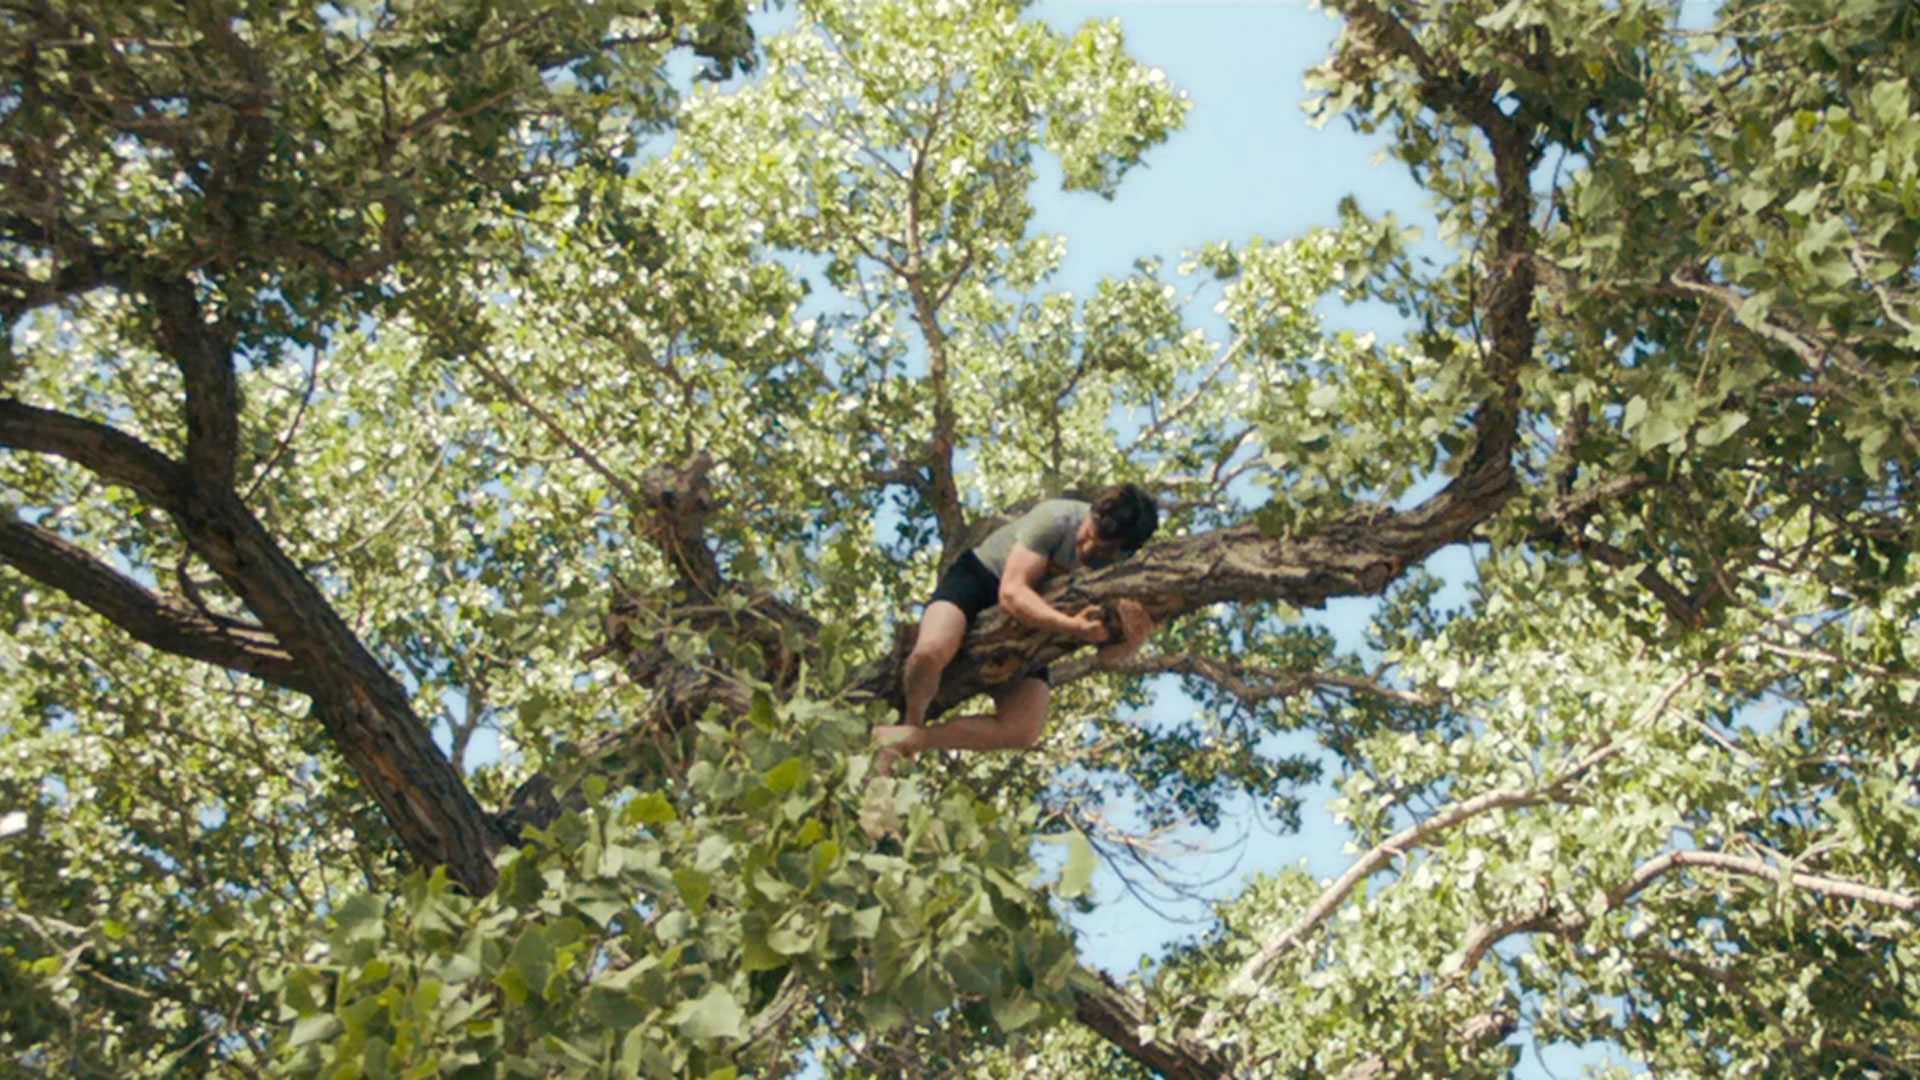 نیتن فیلدر دو دستی به شاخه‌ی یک درخت بزرگ چسبیده است در نمایی از سریال نفرین به کارگردانی نیتن فیلدر